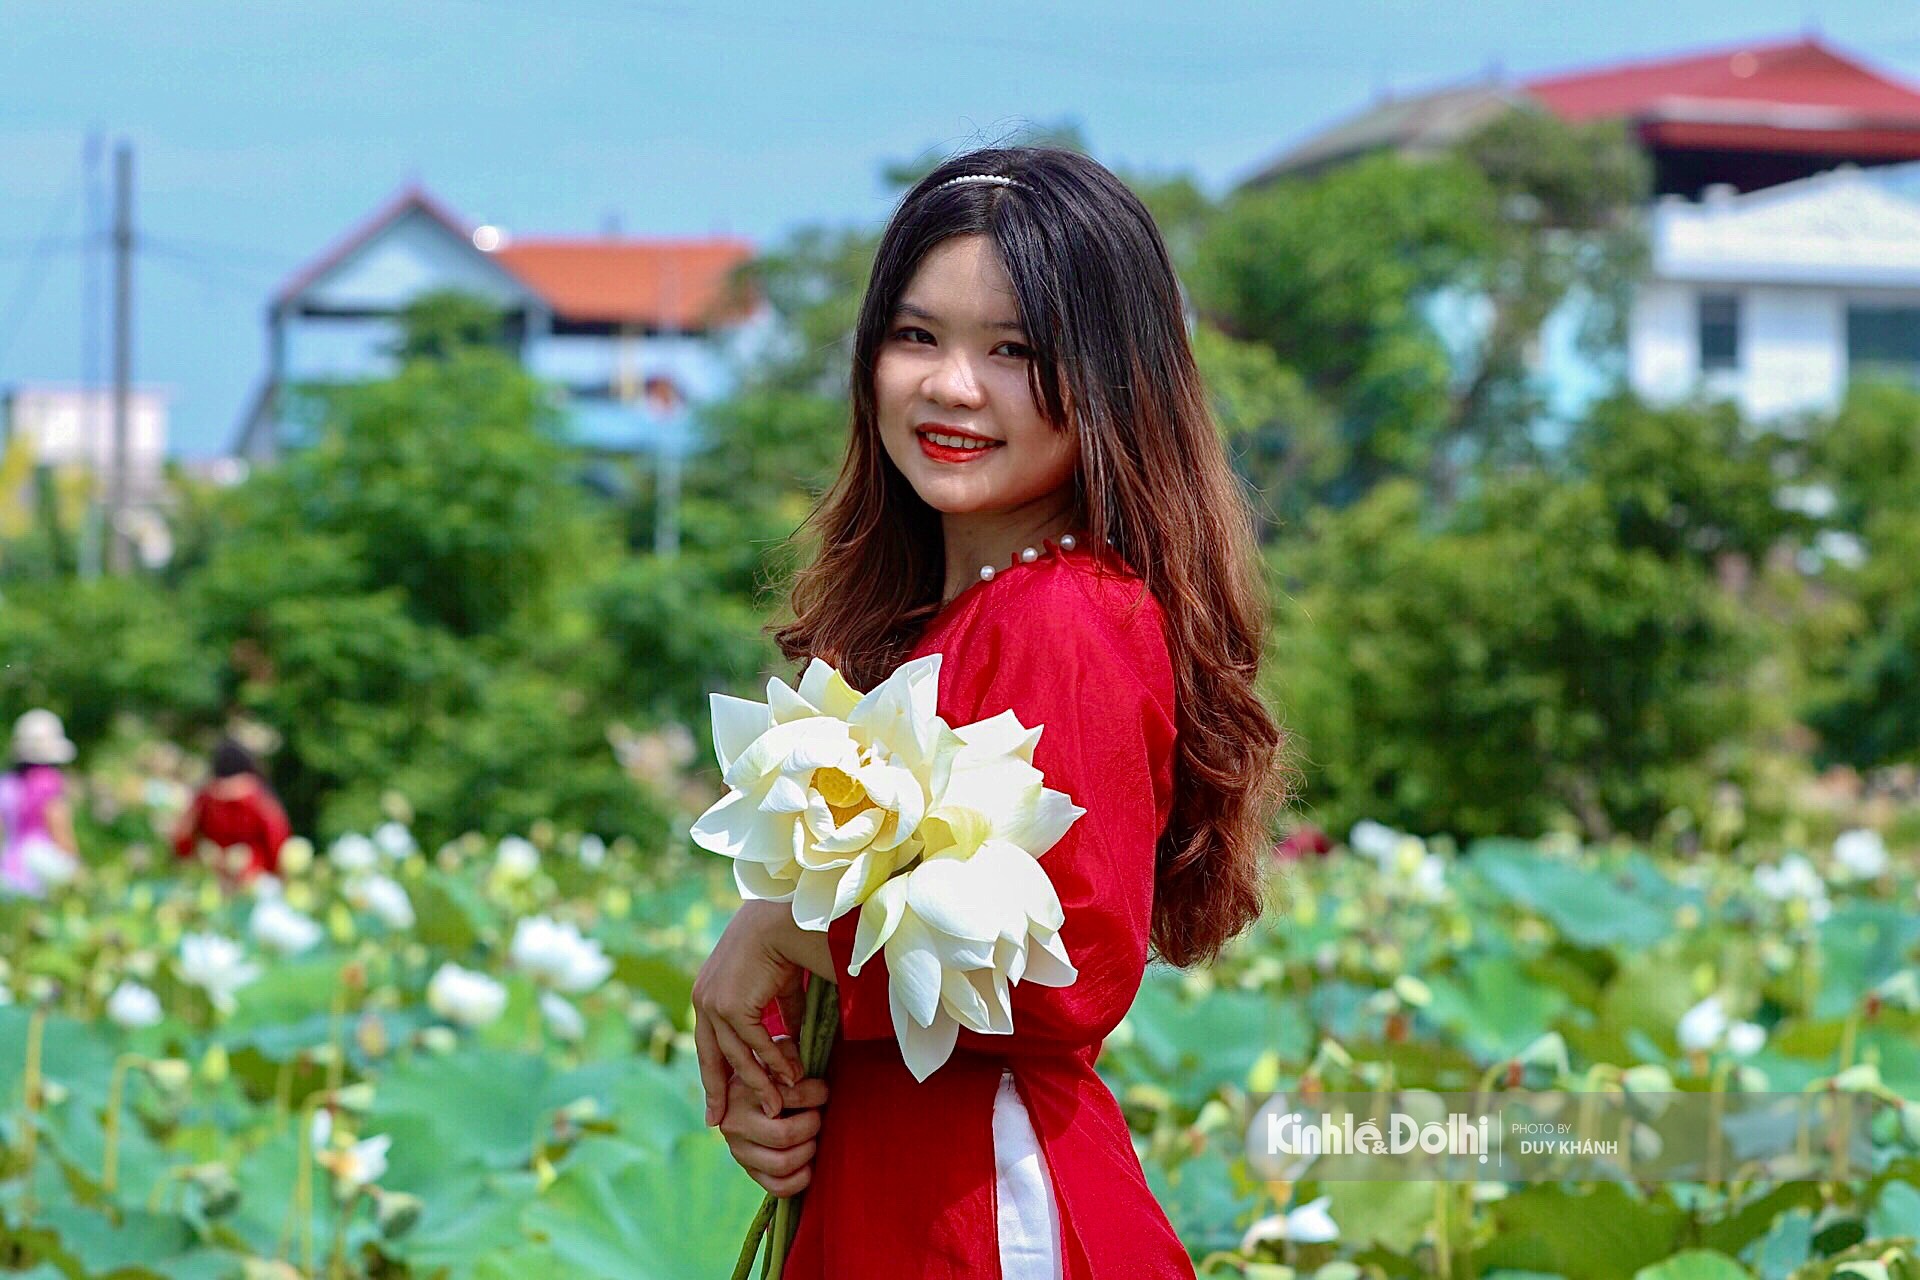 Đầm sen trắng xinh đẹp tại Hà Nội sẽ khiến bất cứ ai cũng phải ngạc nhiên với vẻ đẹp của nó. Bạn sẽ cảm nhận được tình yêu và sự bình yên tràn đầy khi đến thăm. Hãy đến và tận hưởng những khoảnh khắc đáng nhớ tại đây.